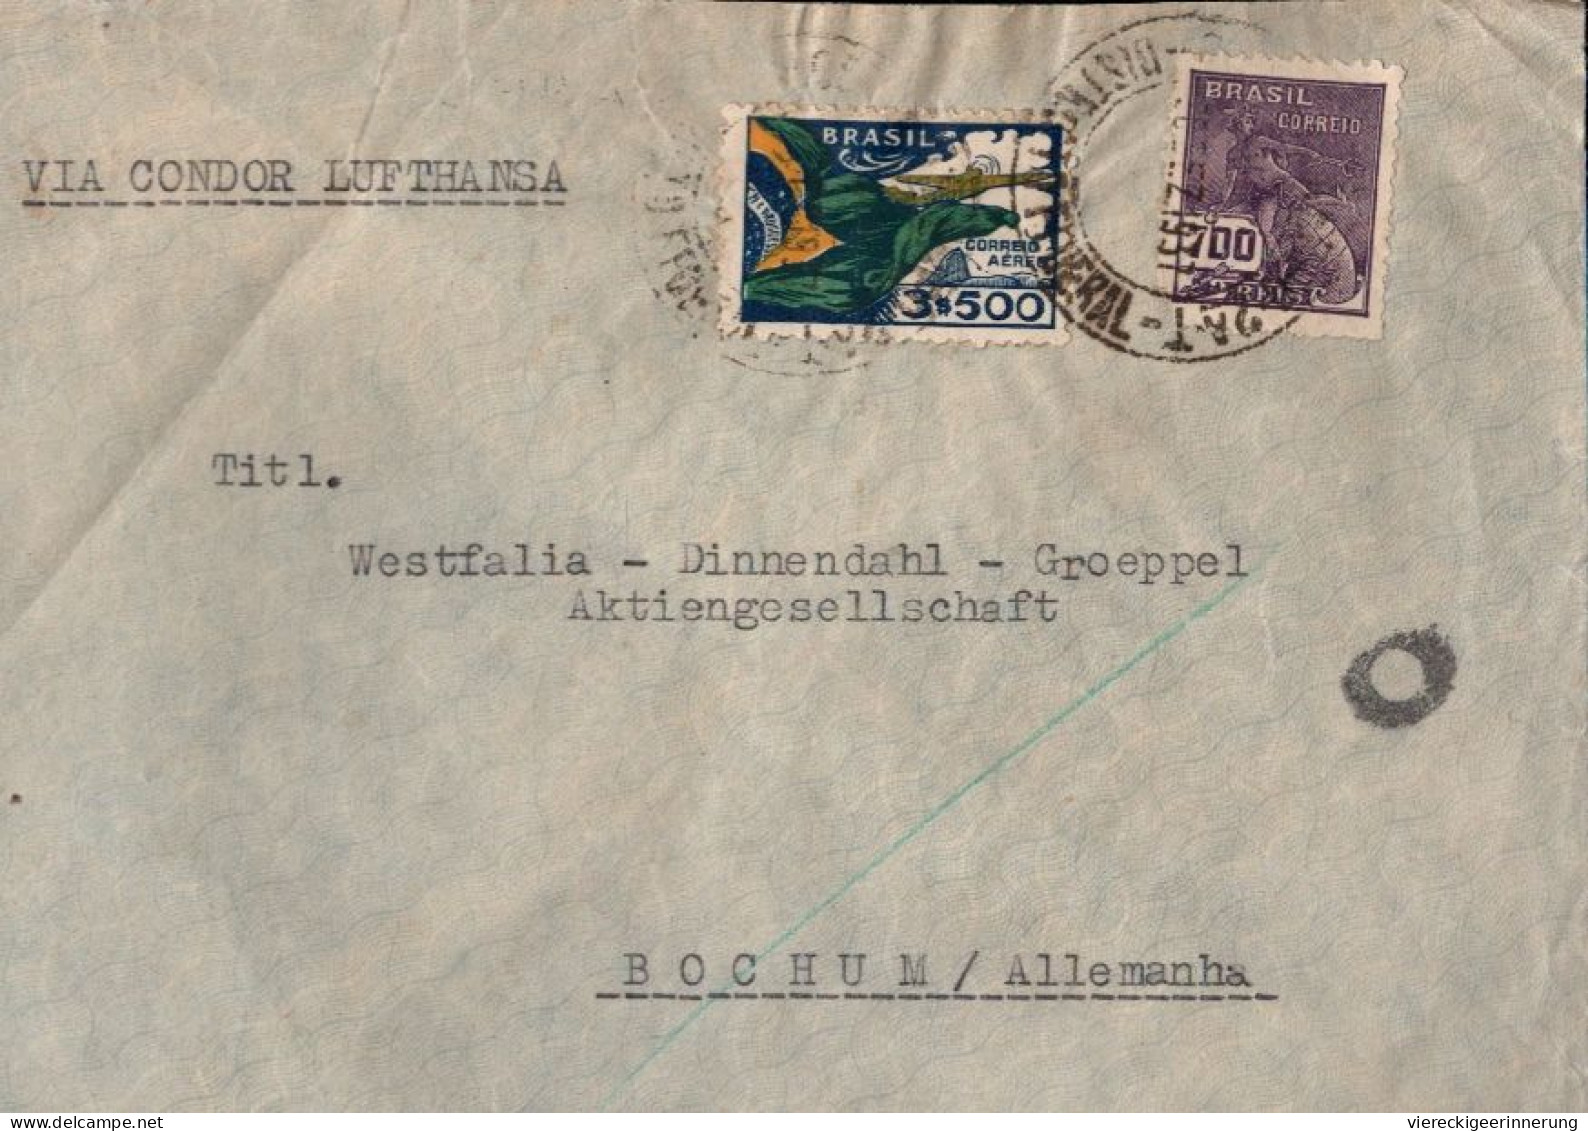 ! Luftpostbrief, Airmail Cover, 1937 Aus Rio De Janeiro, Brasilien, Via Condor Lufthansa, Nach Bochum - Airmail